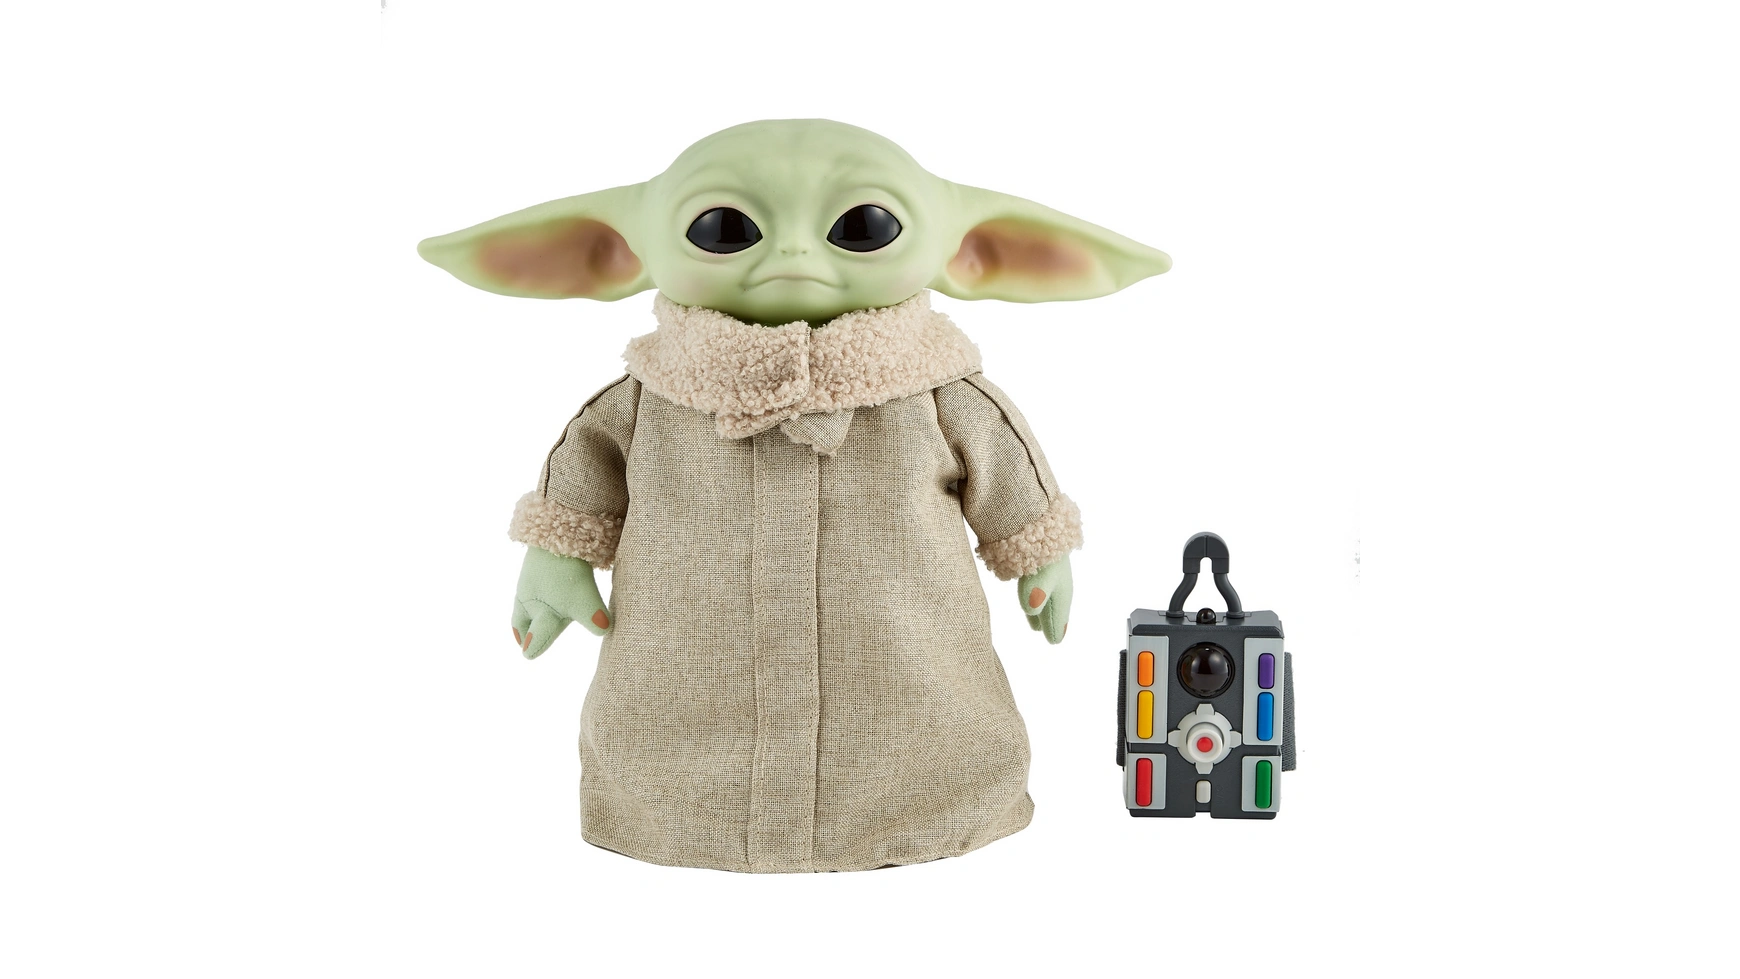 Функциональный плюш Disney Star Wars Mandalorian The Child Baby Yoda фигурка кошки 28 см